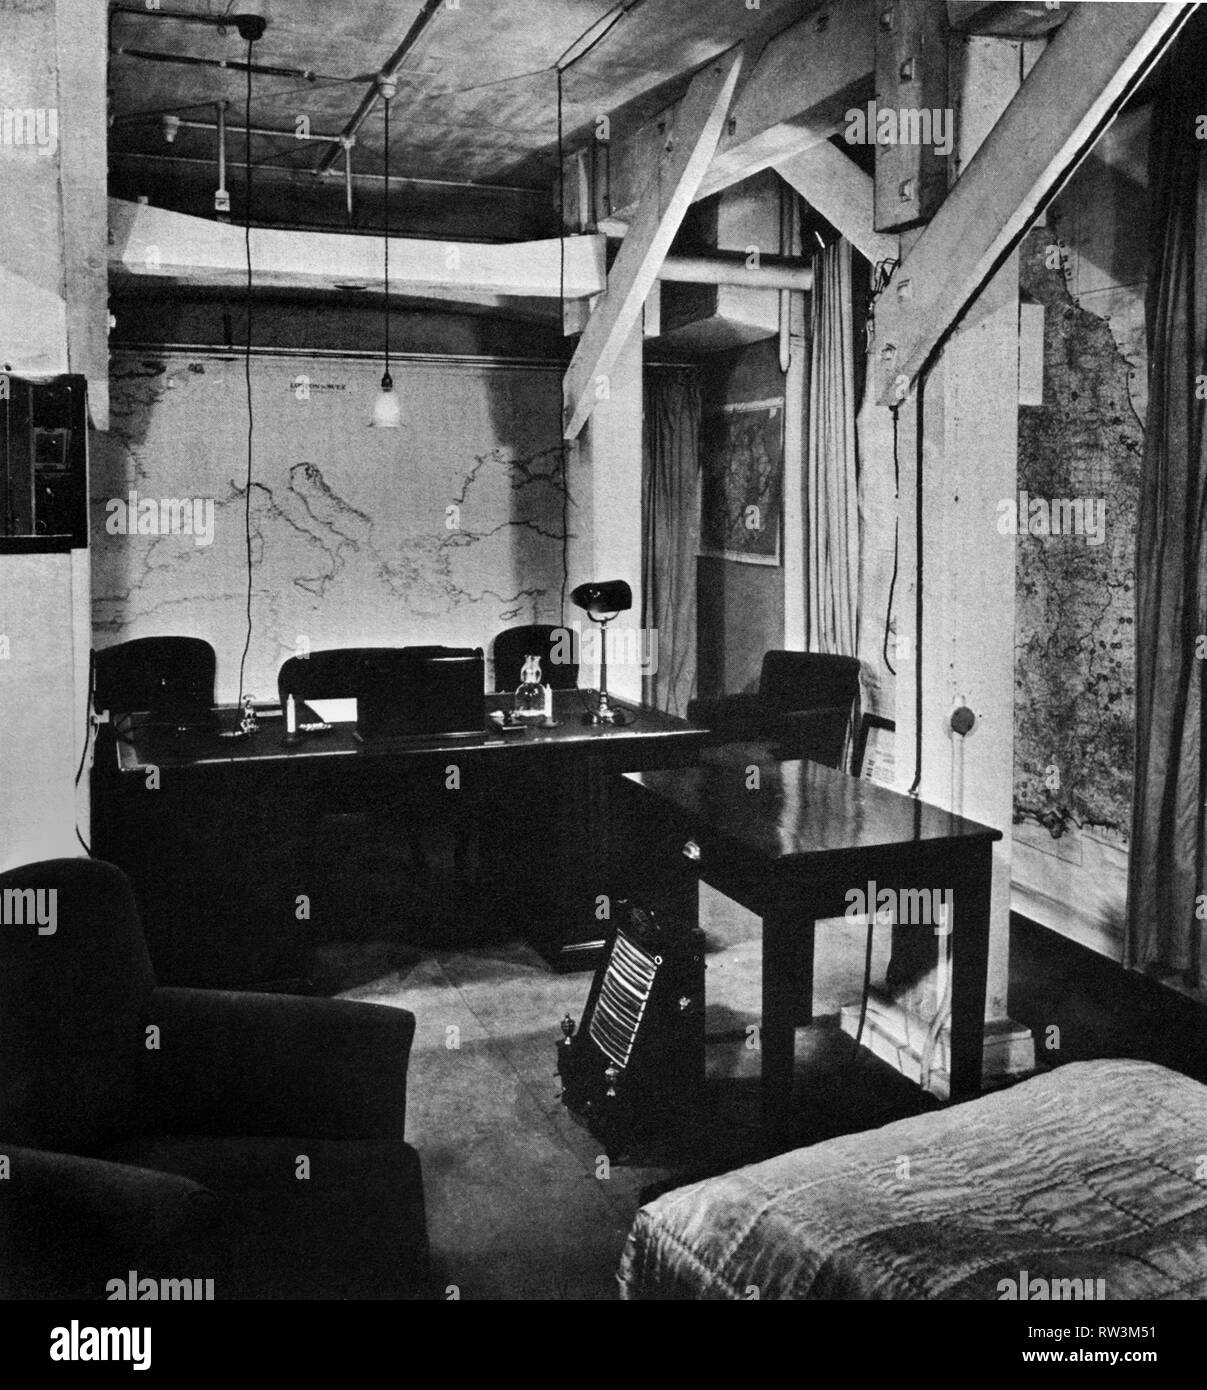 Le bureau et la chambre de Winston Churchill dans la salle de guerre souterraine sous Whitehall, Londres. Septembre 1940 Banque D'Images